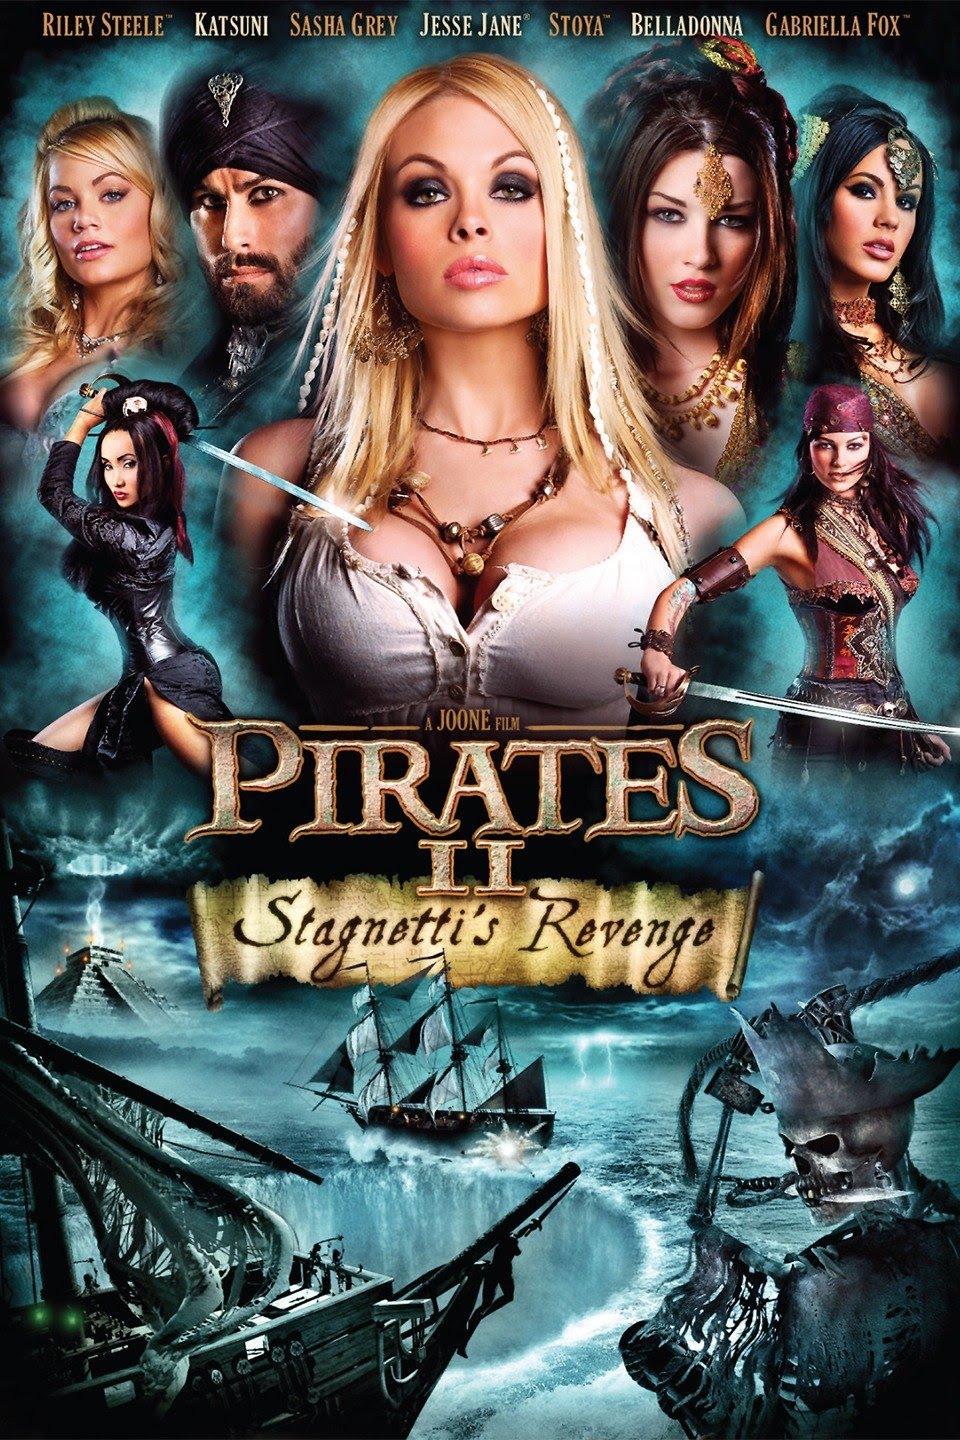 Pirates porn film